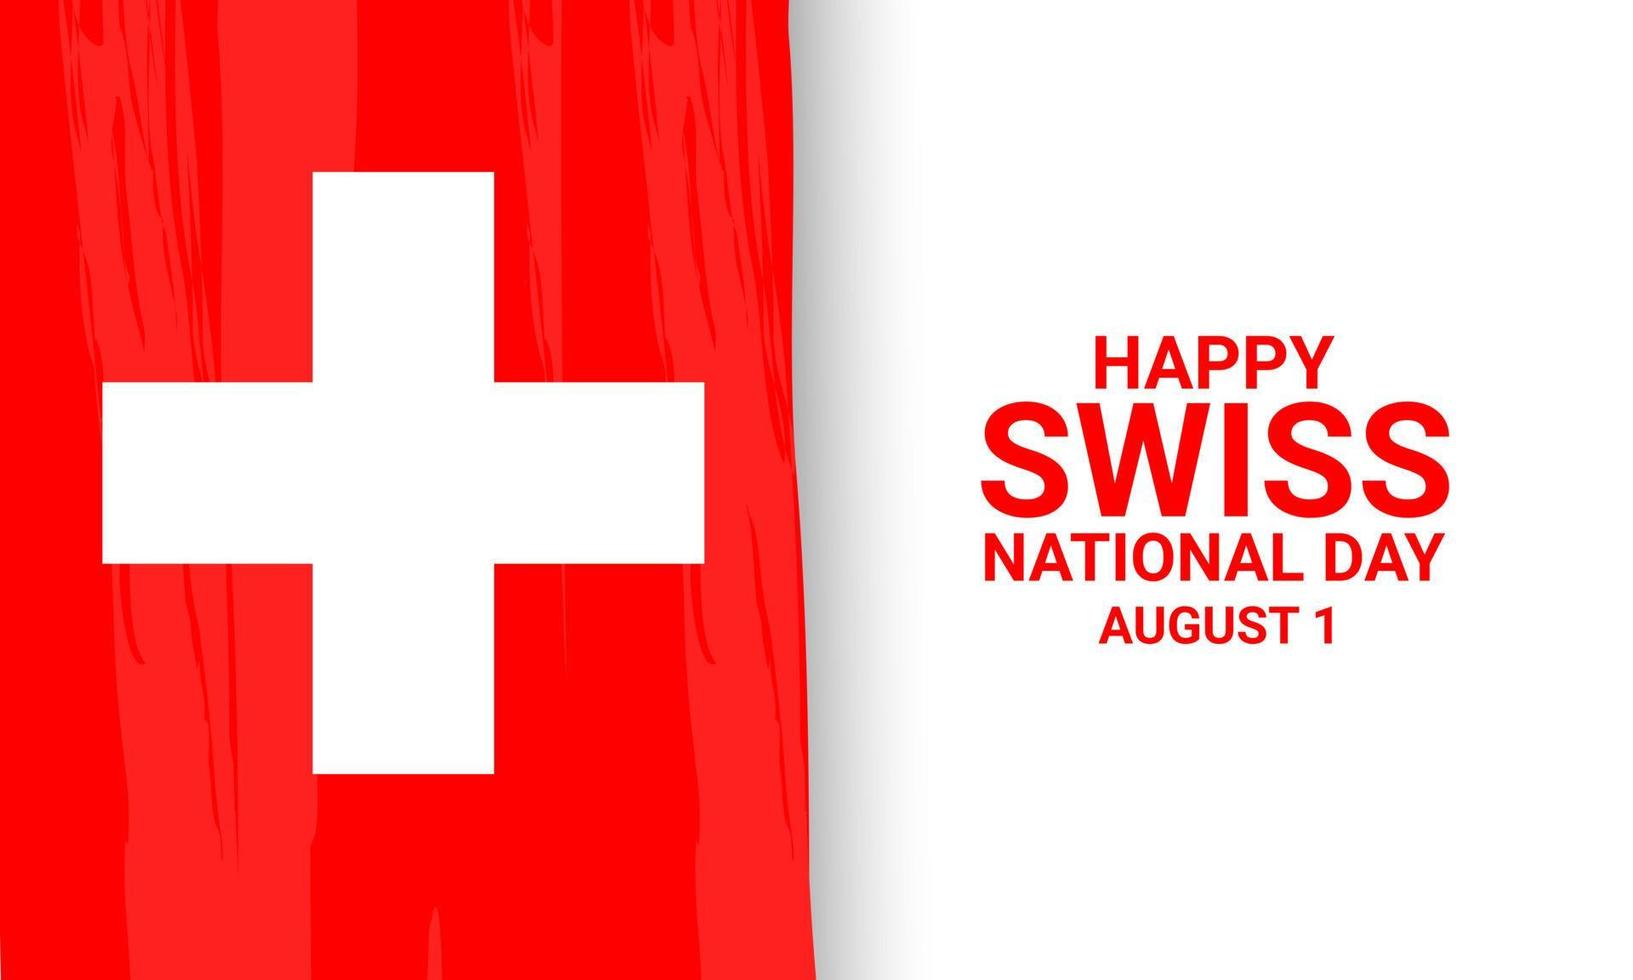 sfondo della giornata nazionale svizzera. vettore